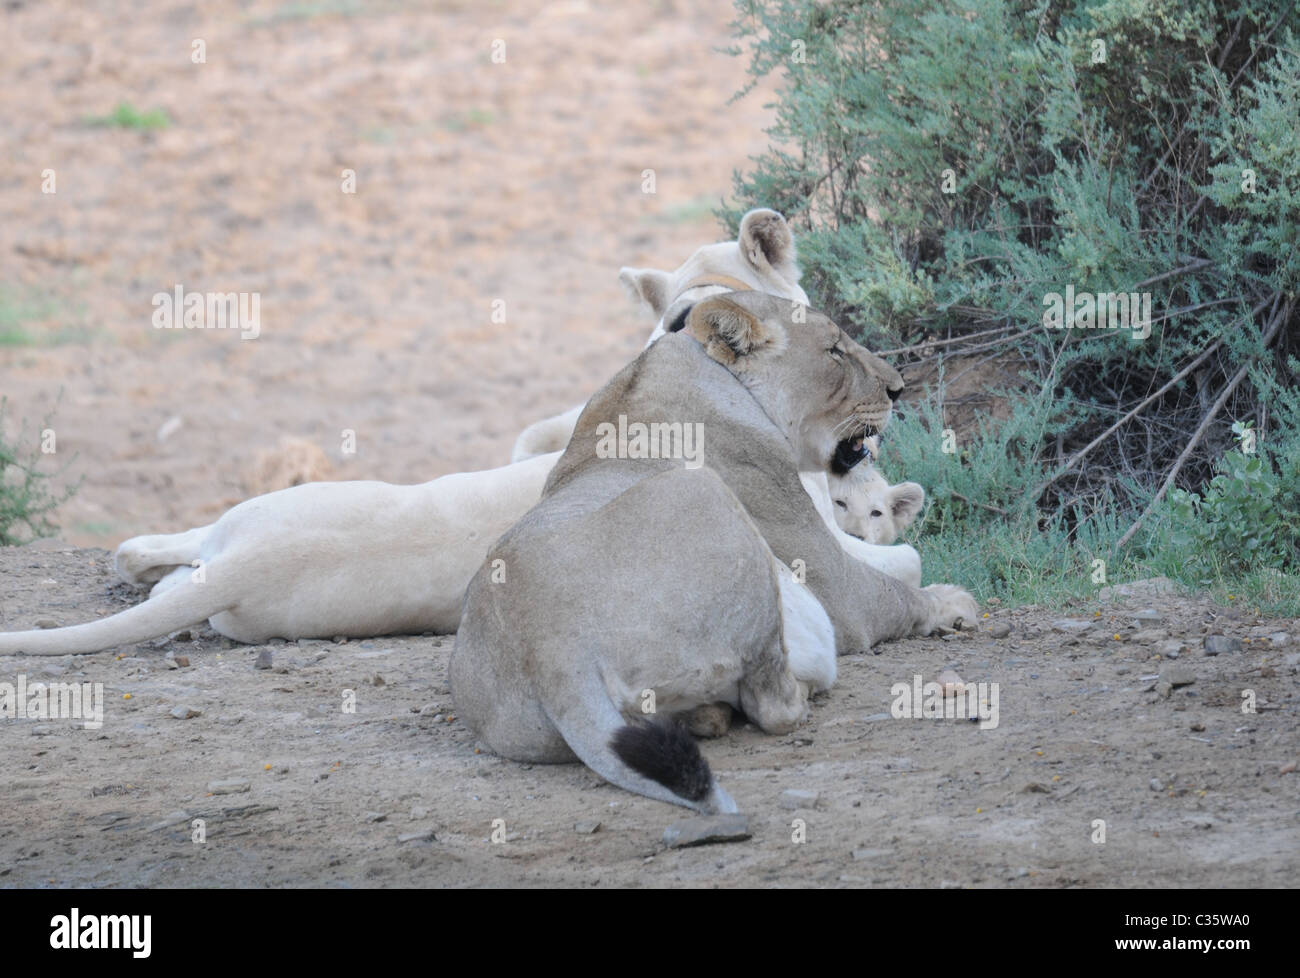 Wild lion hembra marrón y blanco juntos, un par de leones, león blanco con ojos azules Foto de stock